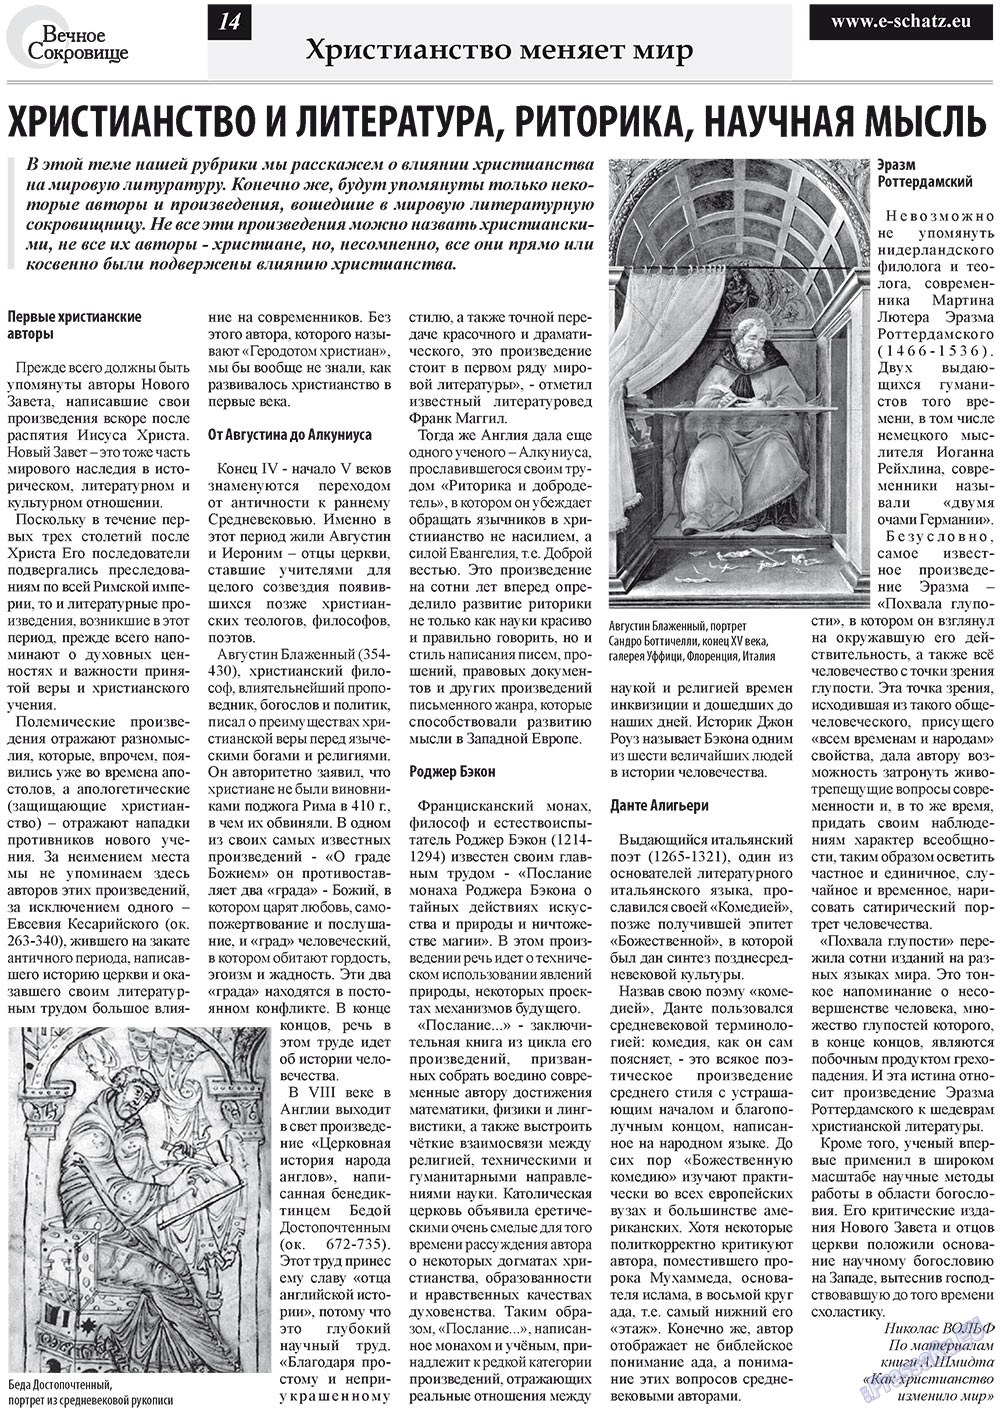 Вечное сокровище, газета. 2011 №6 стр.14